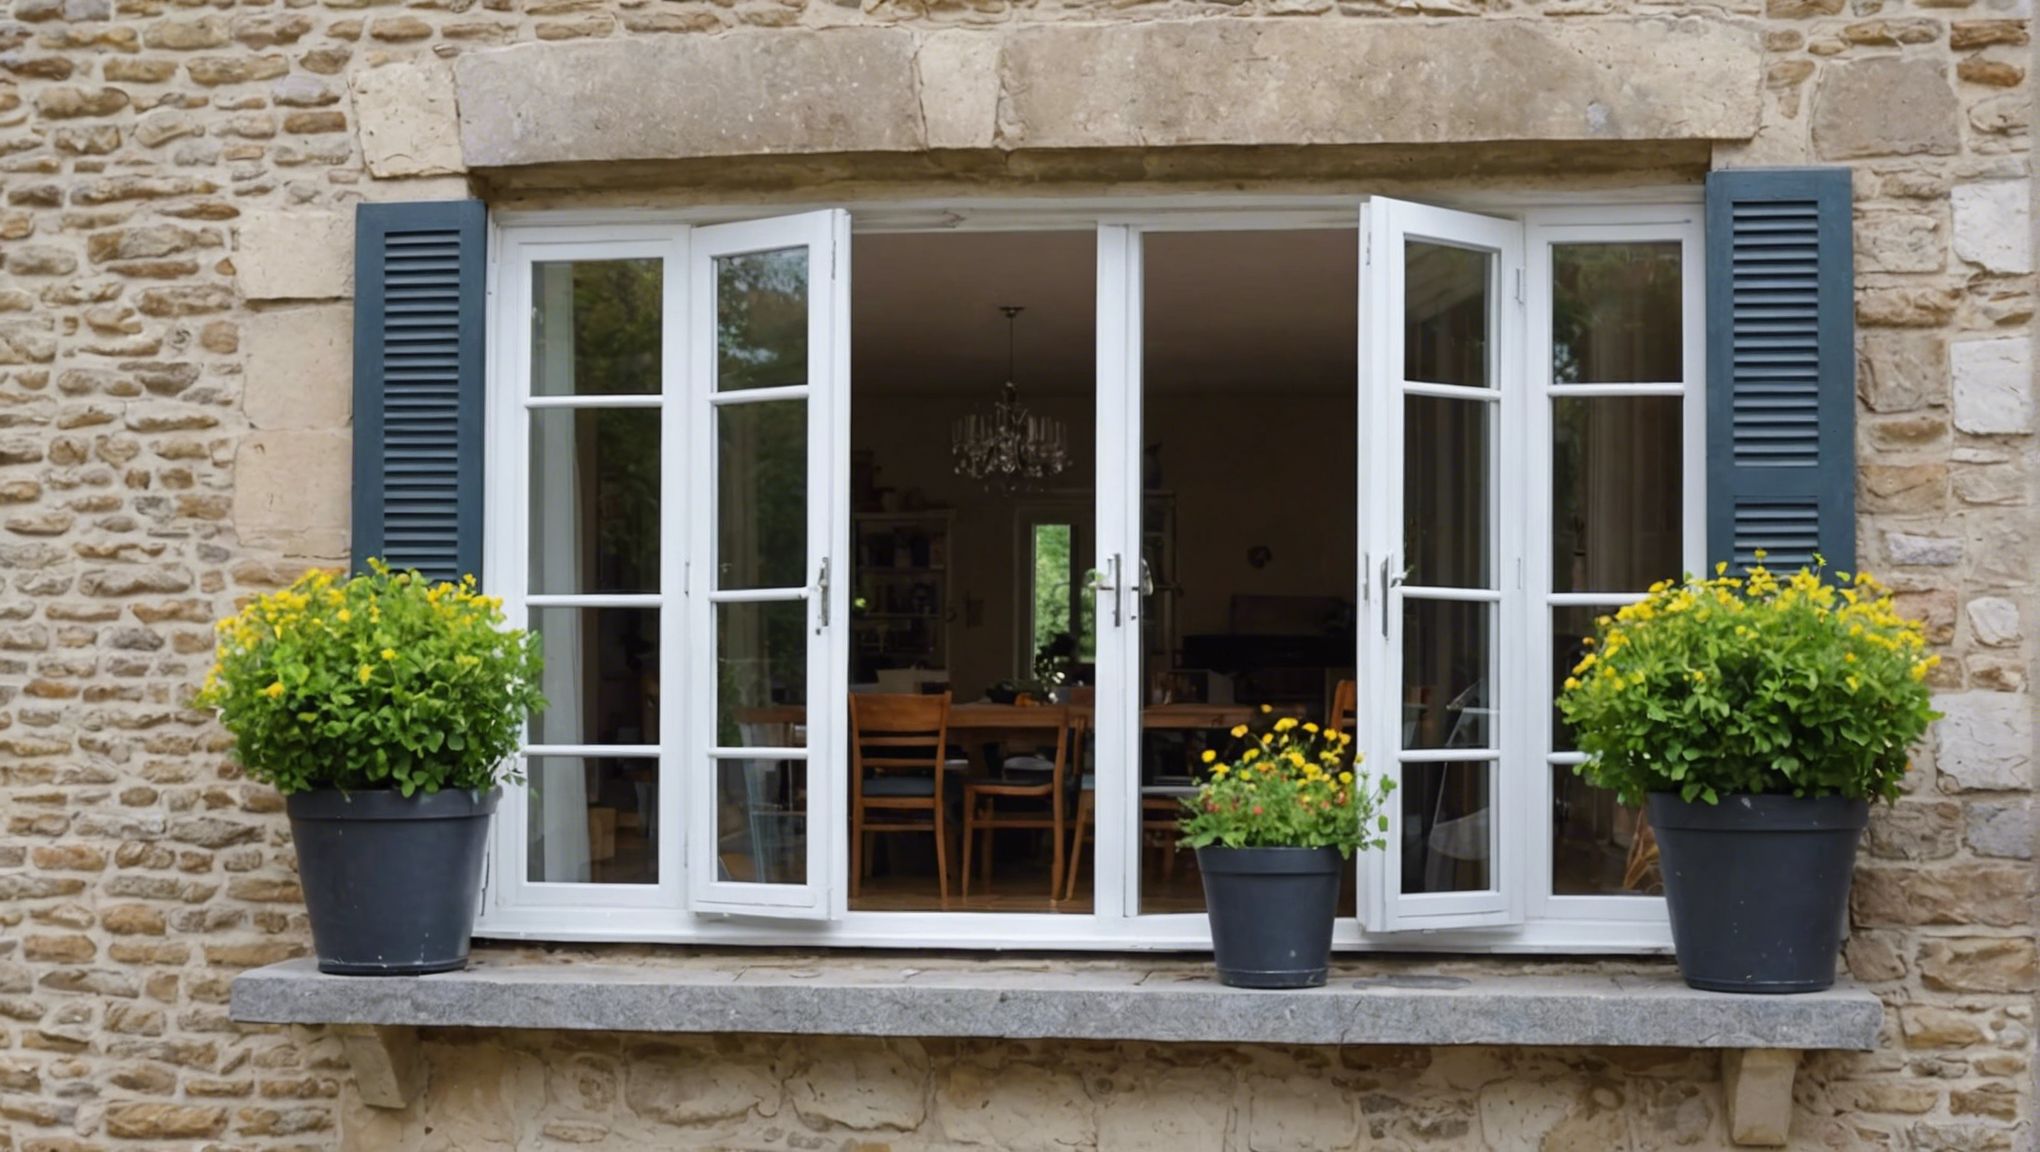 découvrez nos conseils pour choisir la meilleure fenêtre adaptée à votre maison. apprenez comment sélectionner la fenêtre idéale en fonction de vos besoins et de votre style.